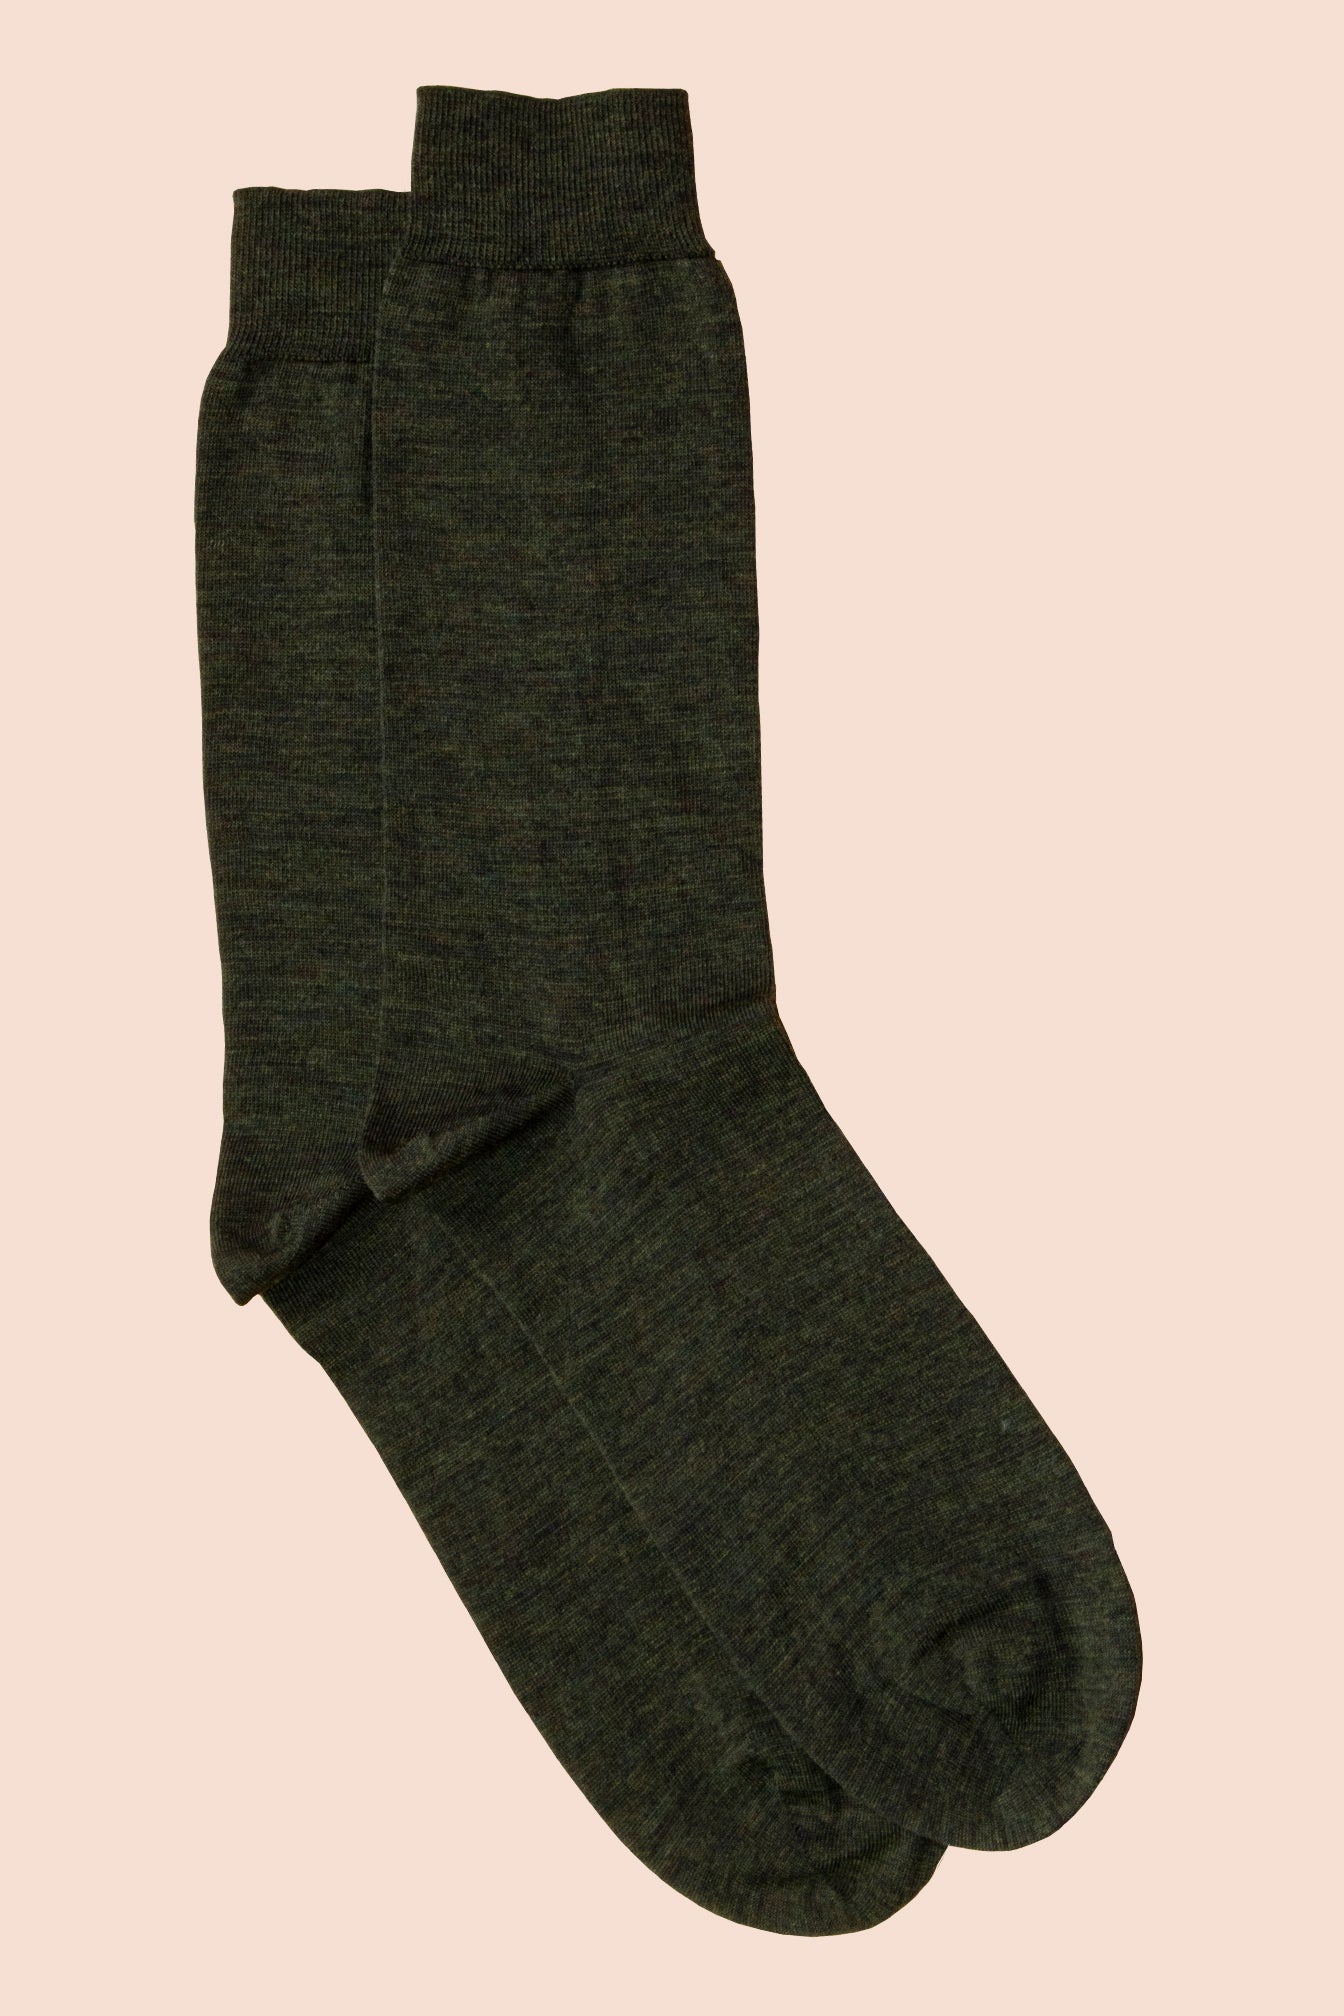 Pétrone chaussettes laine mérinos vert kaki homme